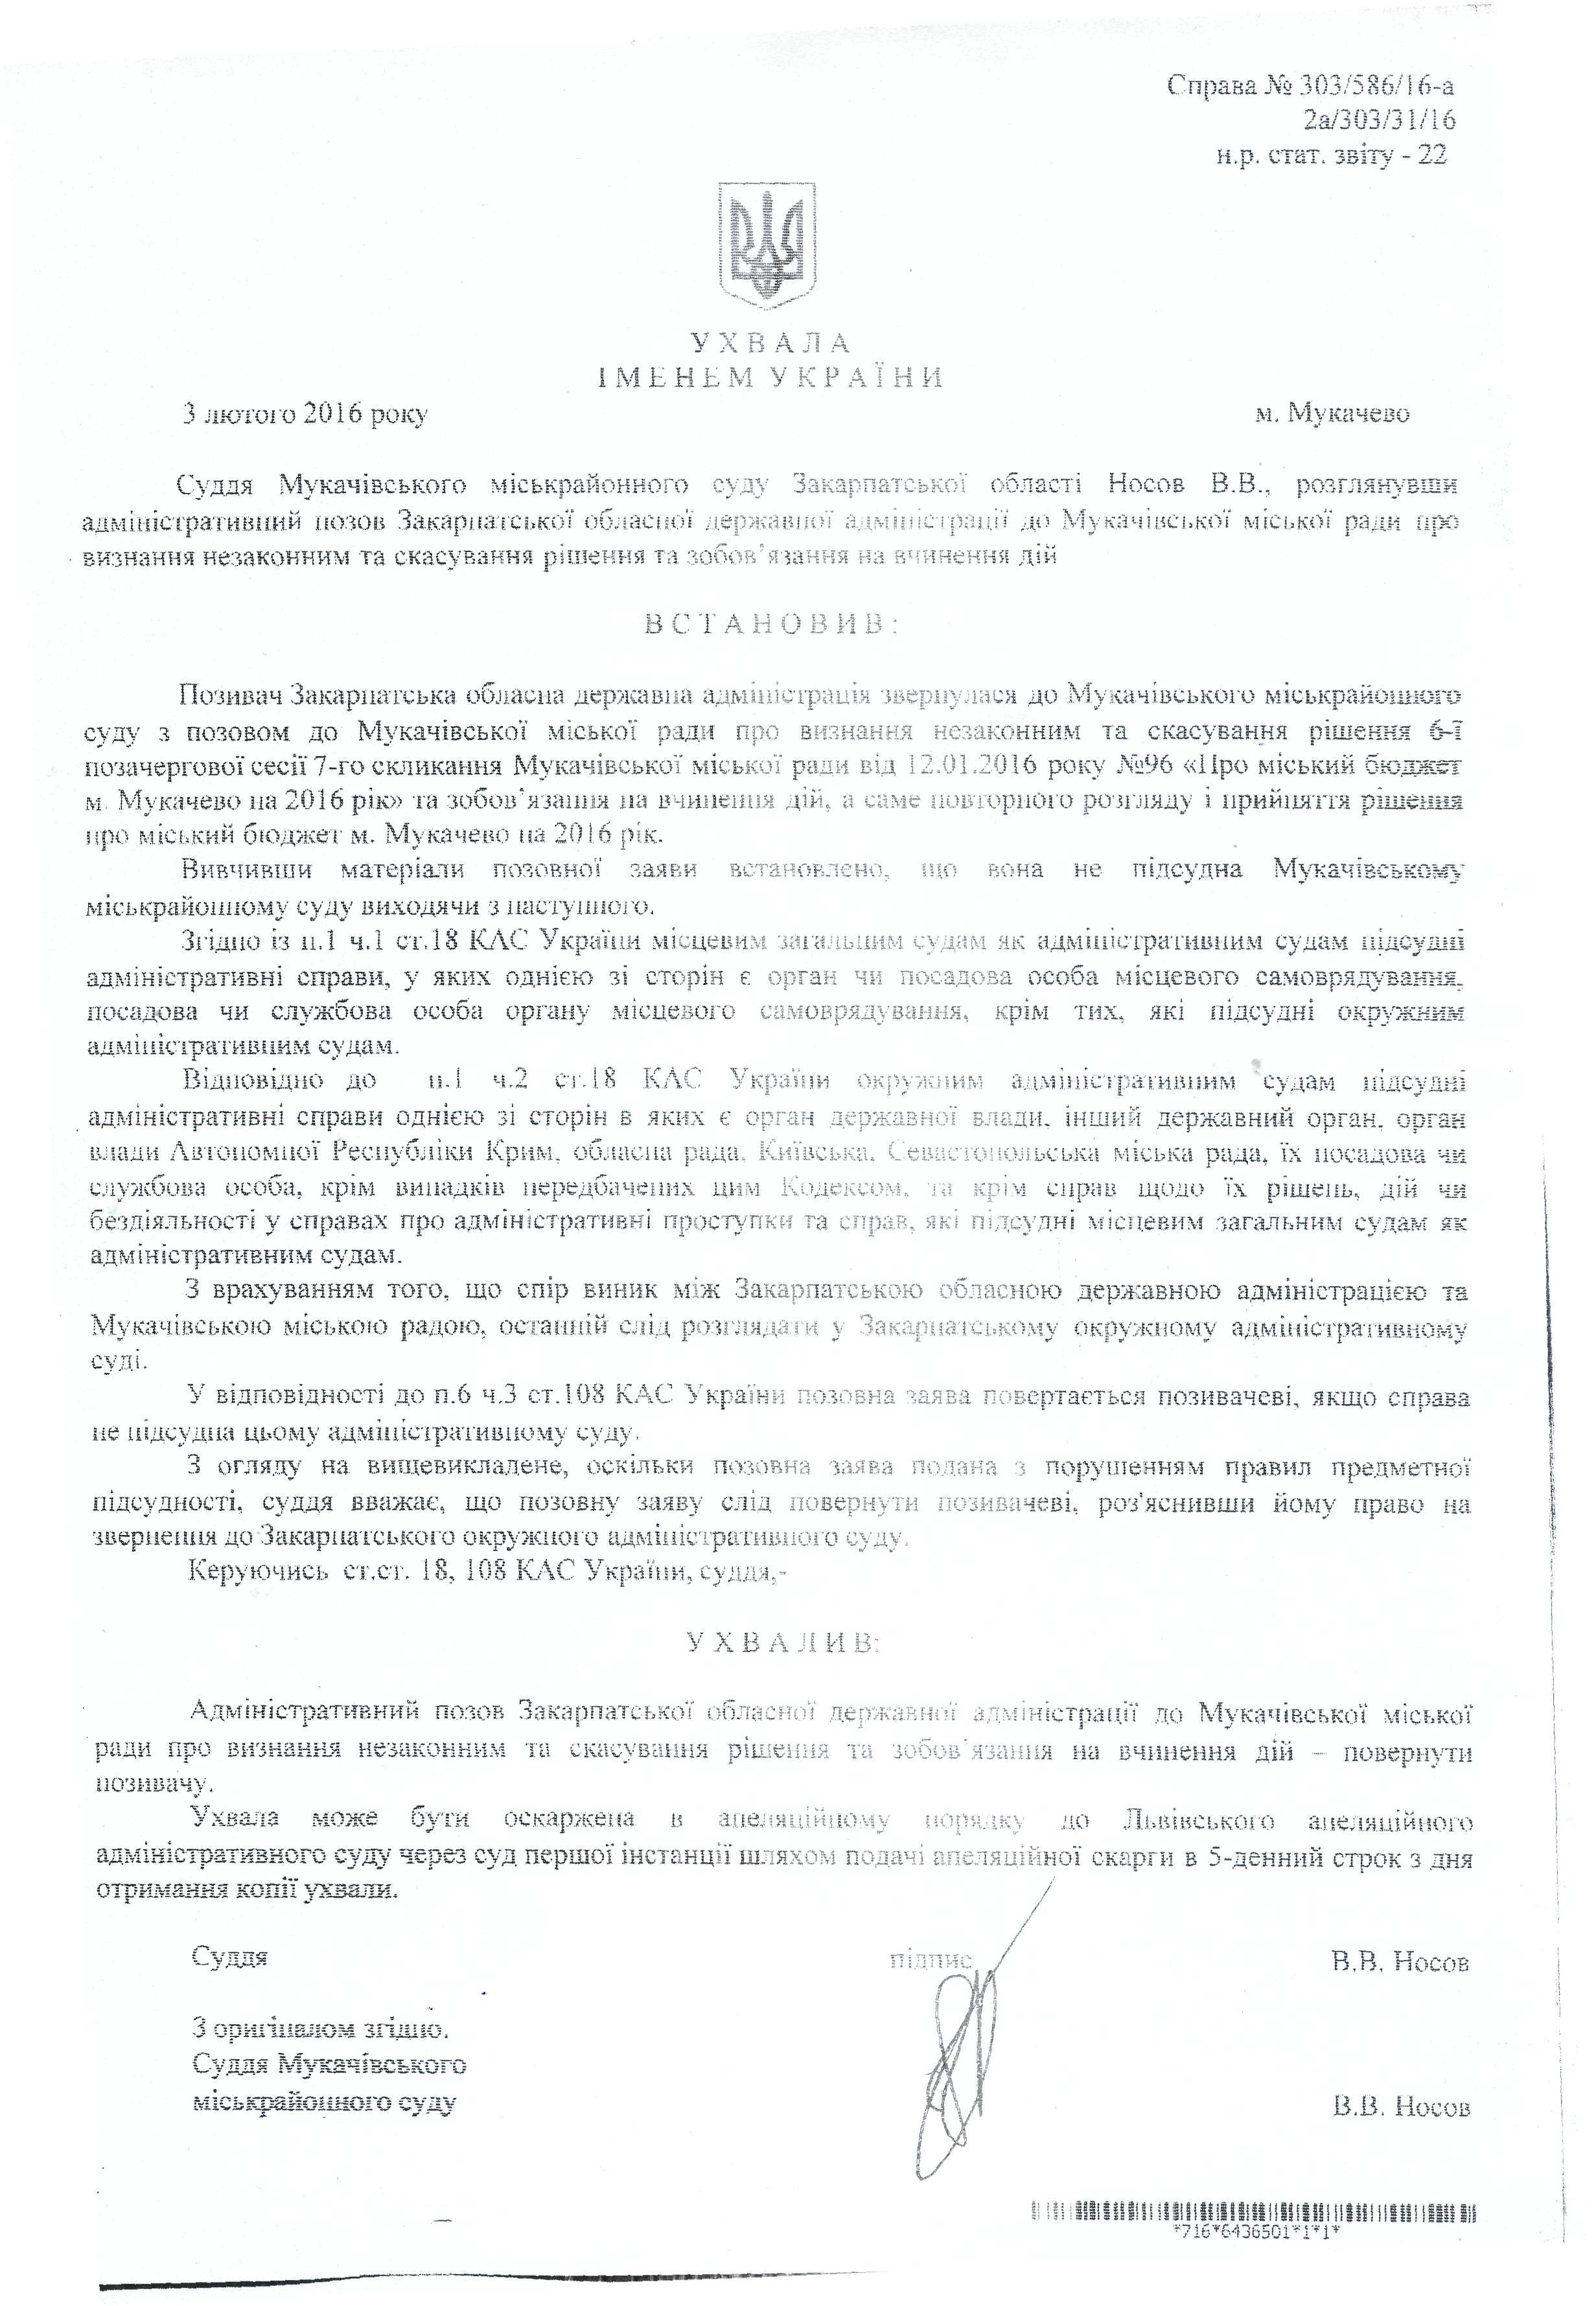 Суд повернув Москалю позов, яким той позивався до Мукачівської міської ради 